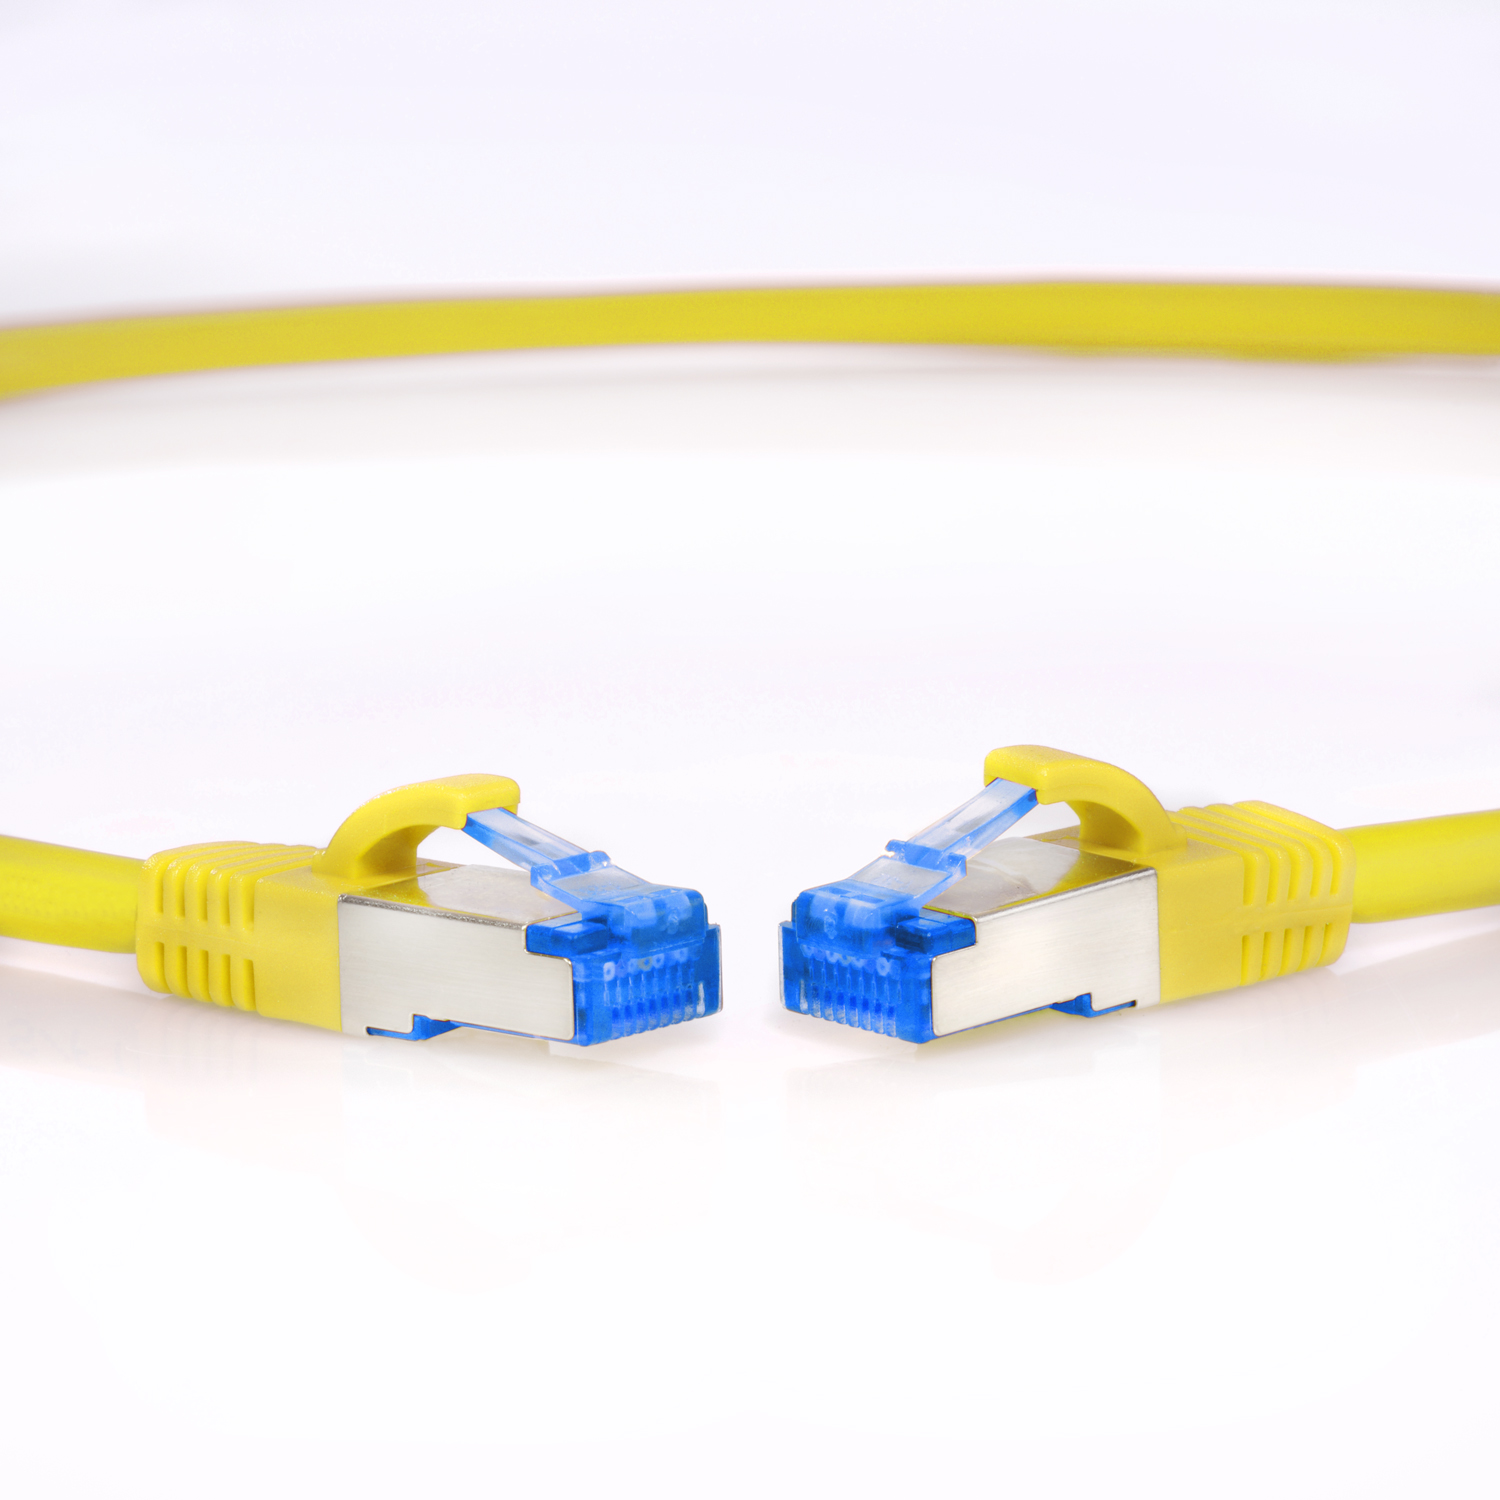 TPFNET 20m Patchkabel / Netzwerkkabel gelb, 20 m Netzwerkkabel, S/FTP 10GBit